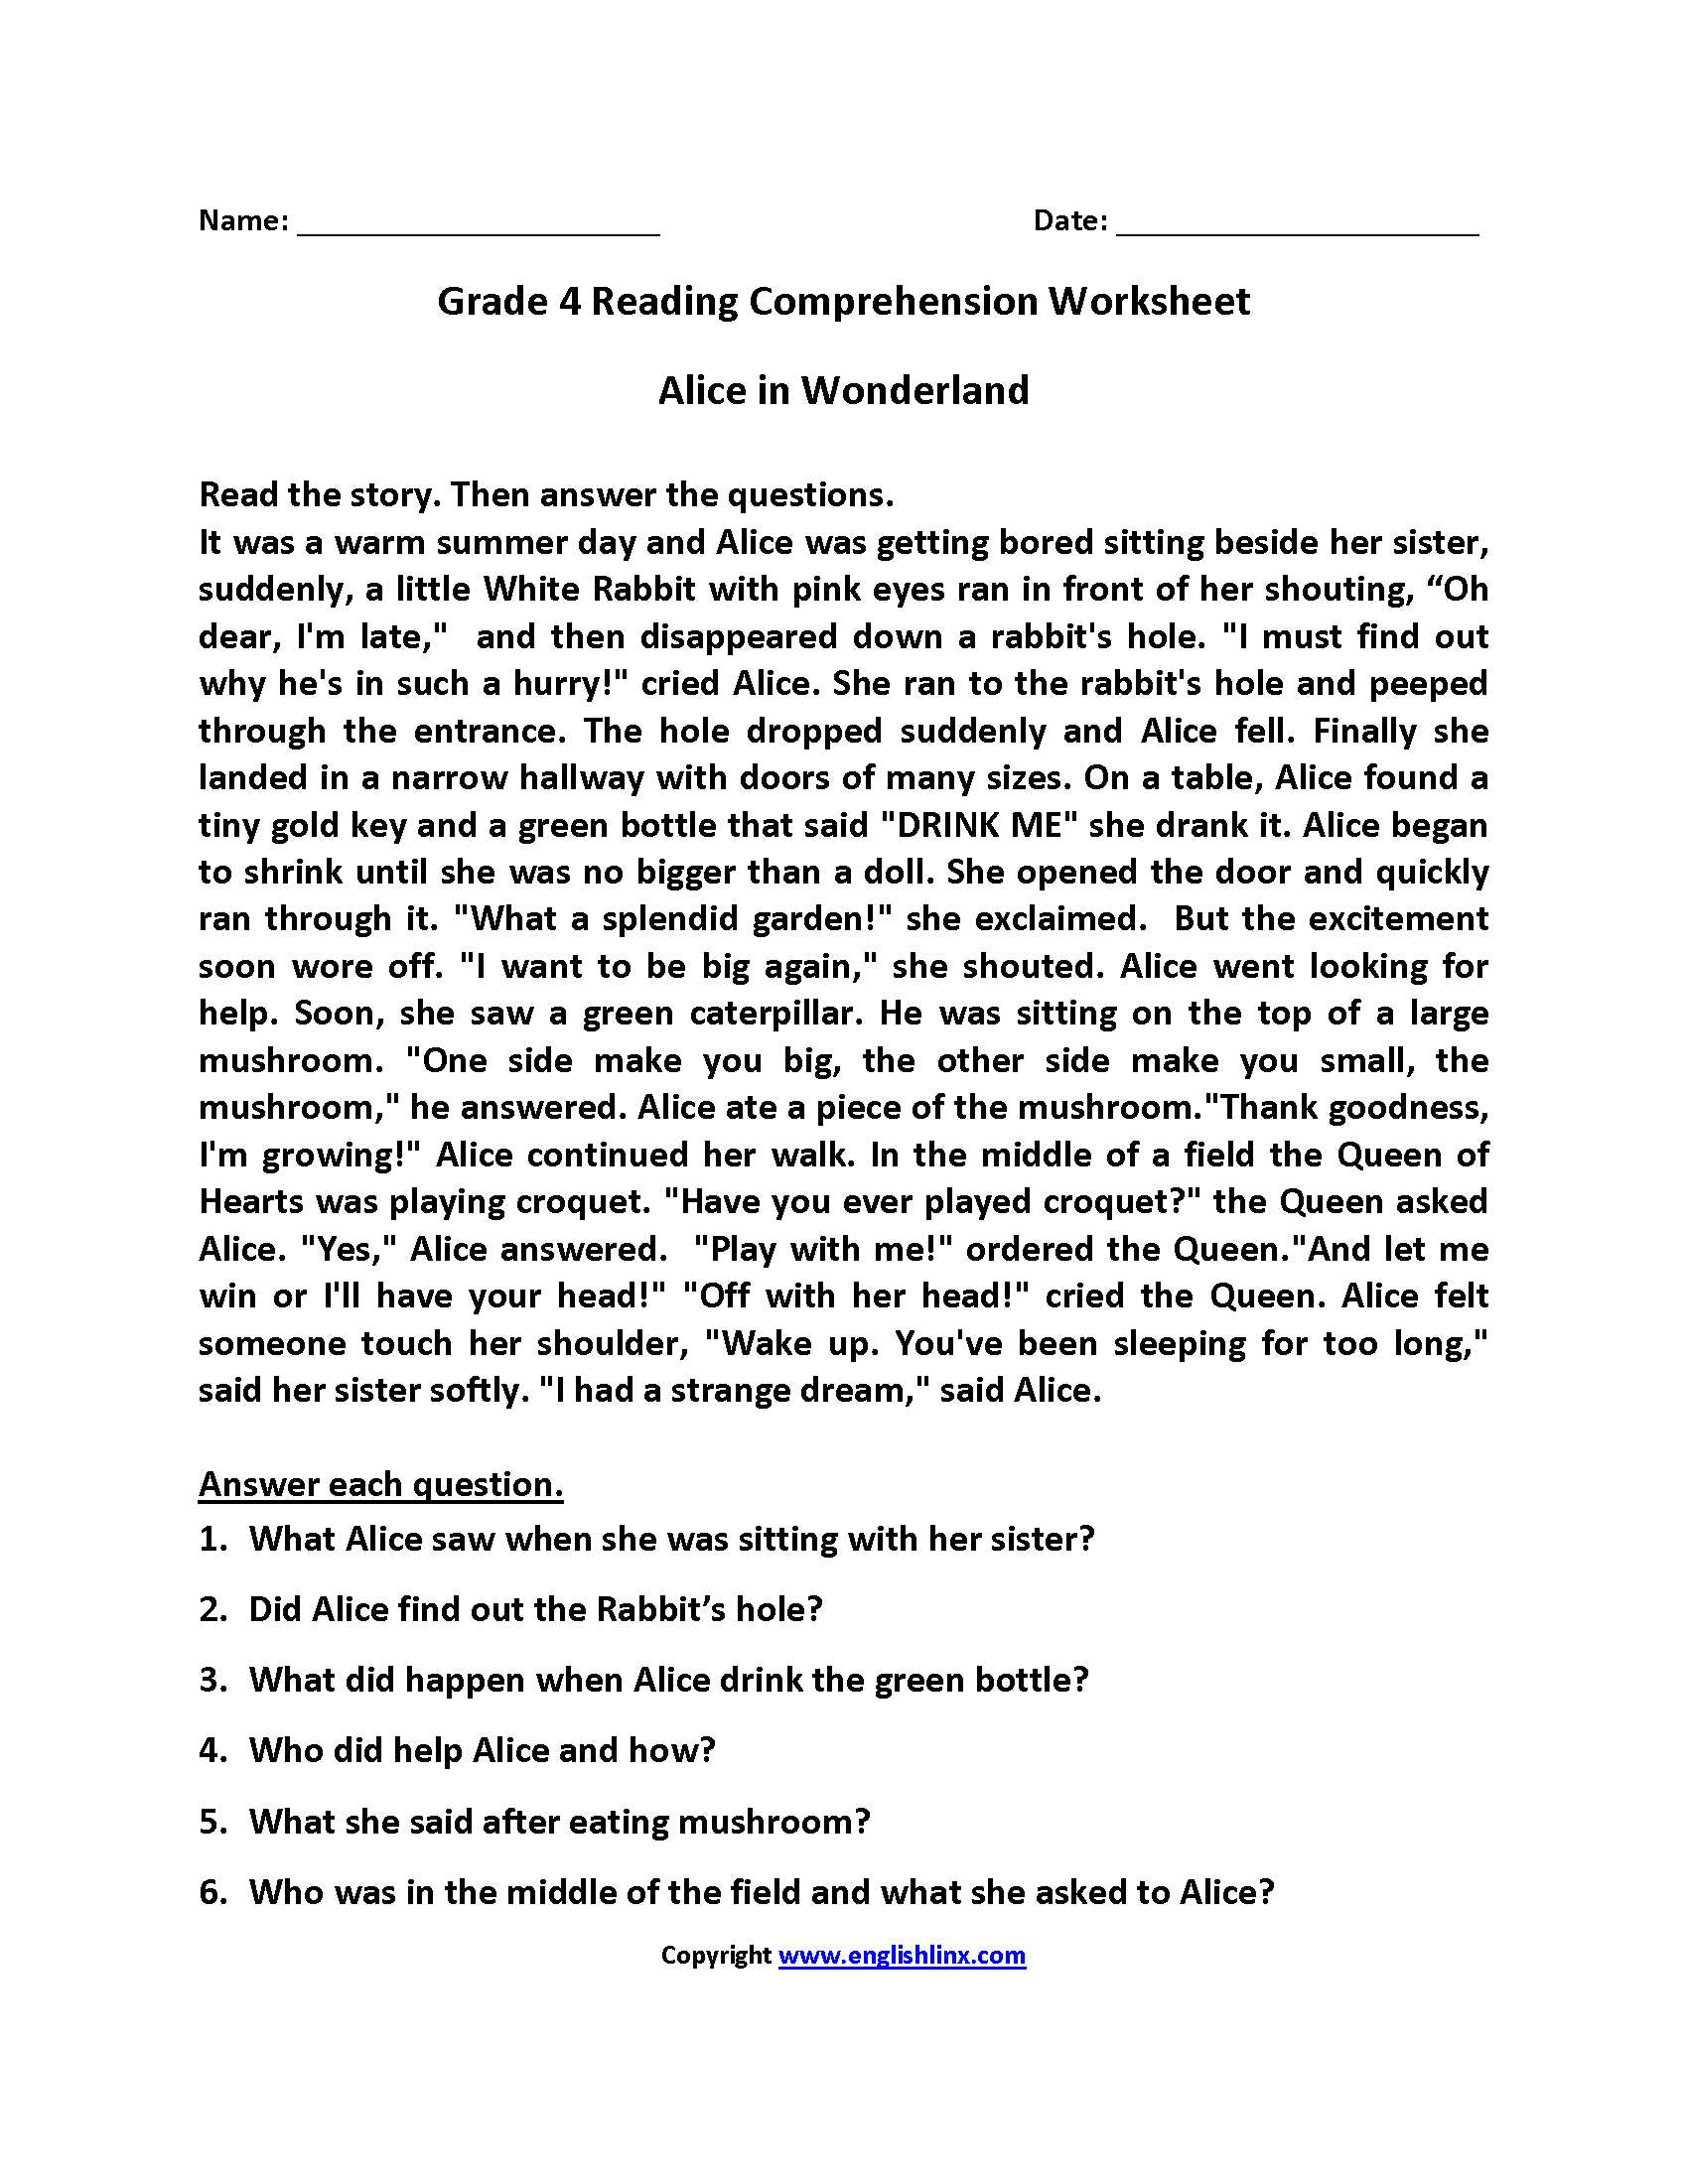 Grade 3 Reading Comprehension Worksheets Pdf Also Reading Prehension Worksheets Middle School Pdf the Best